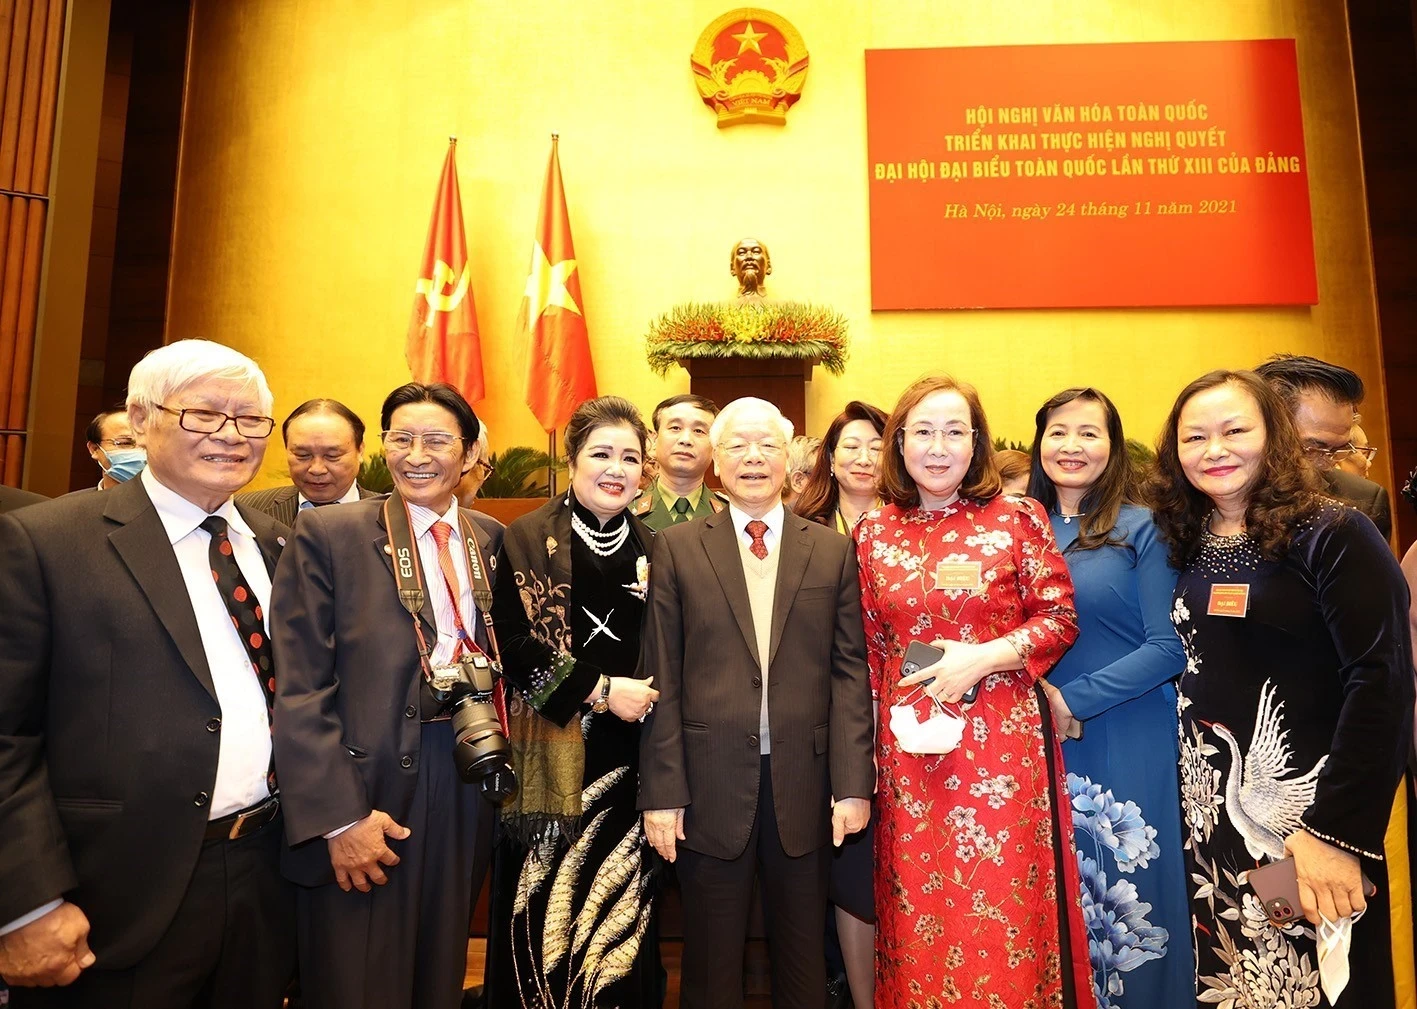 Tổng Bí thư Nguyễn Phú Trọng với các văn nghệ sỹ tại Hội nghị Văn hóa toàn quốc năm 2021. (Ảnh: TTXVN)